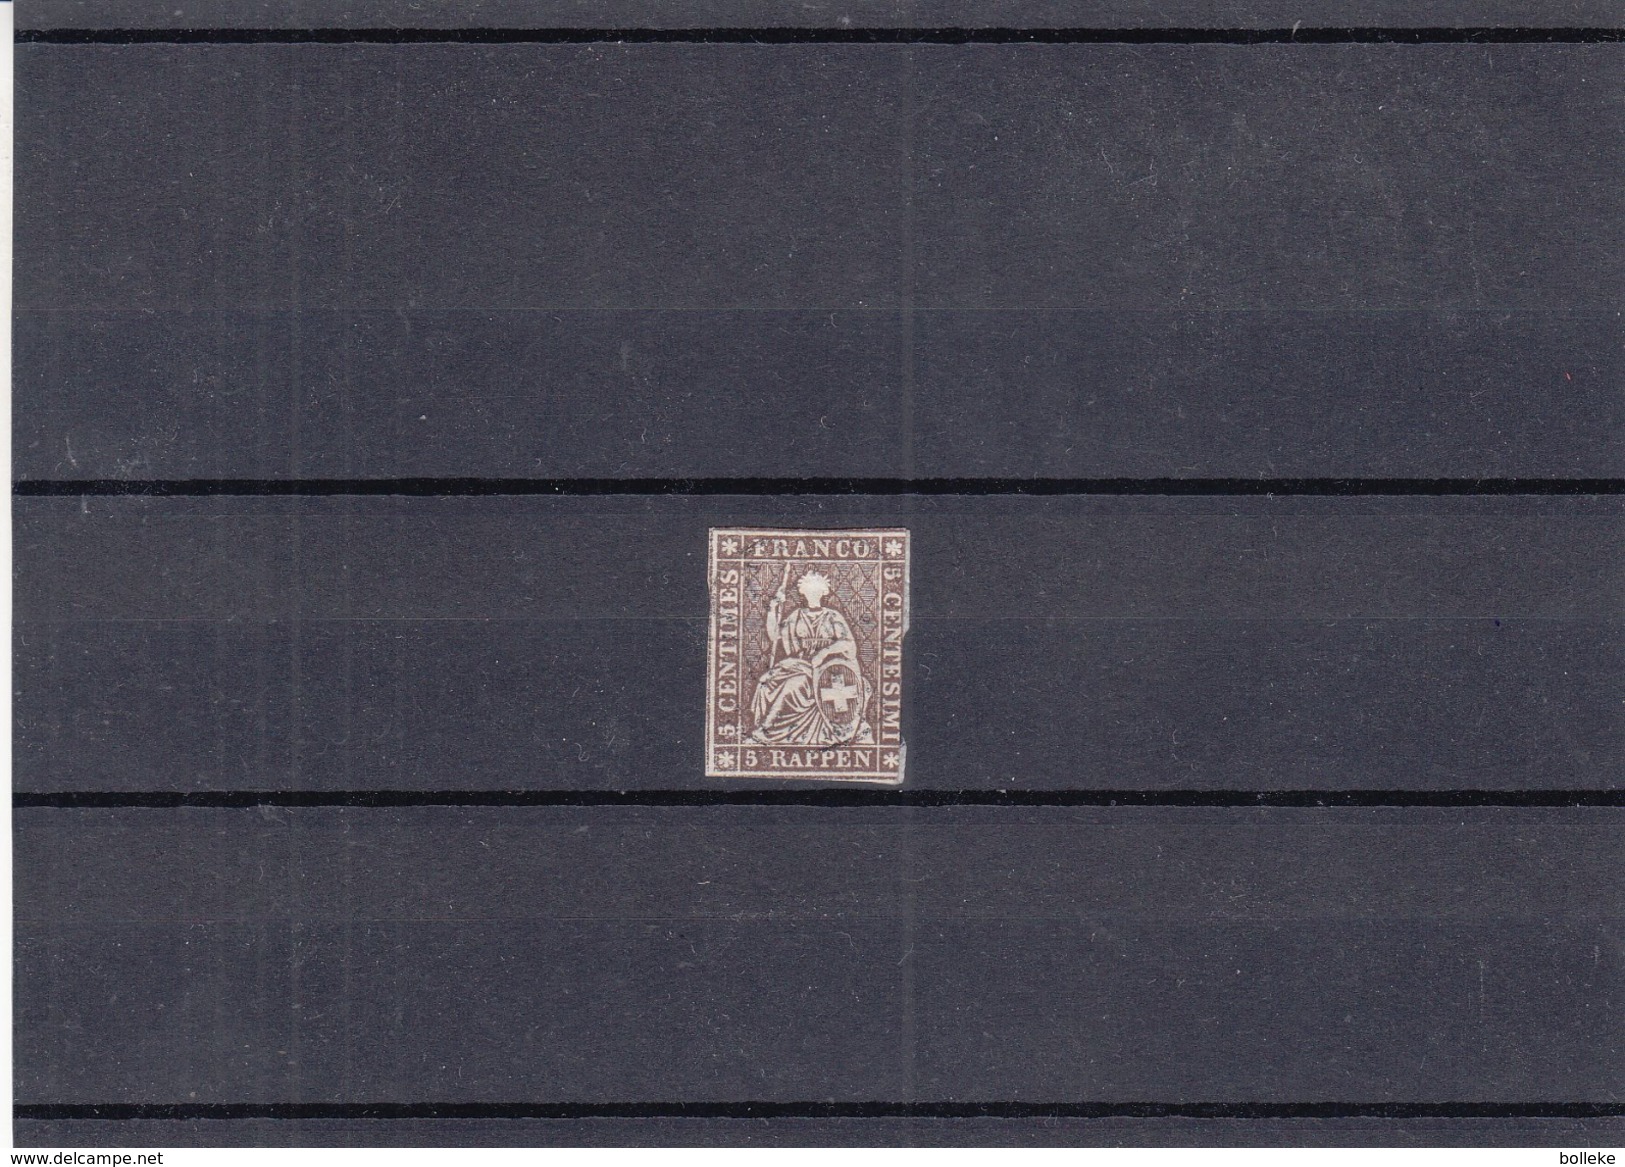 Suisse - Yvert 26c Oblitéré - Papier Moyen - Fil Vert -  Valeur 160 Euros - - Used Stamps